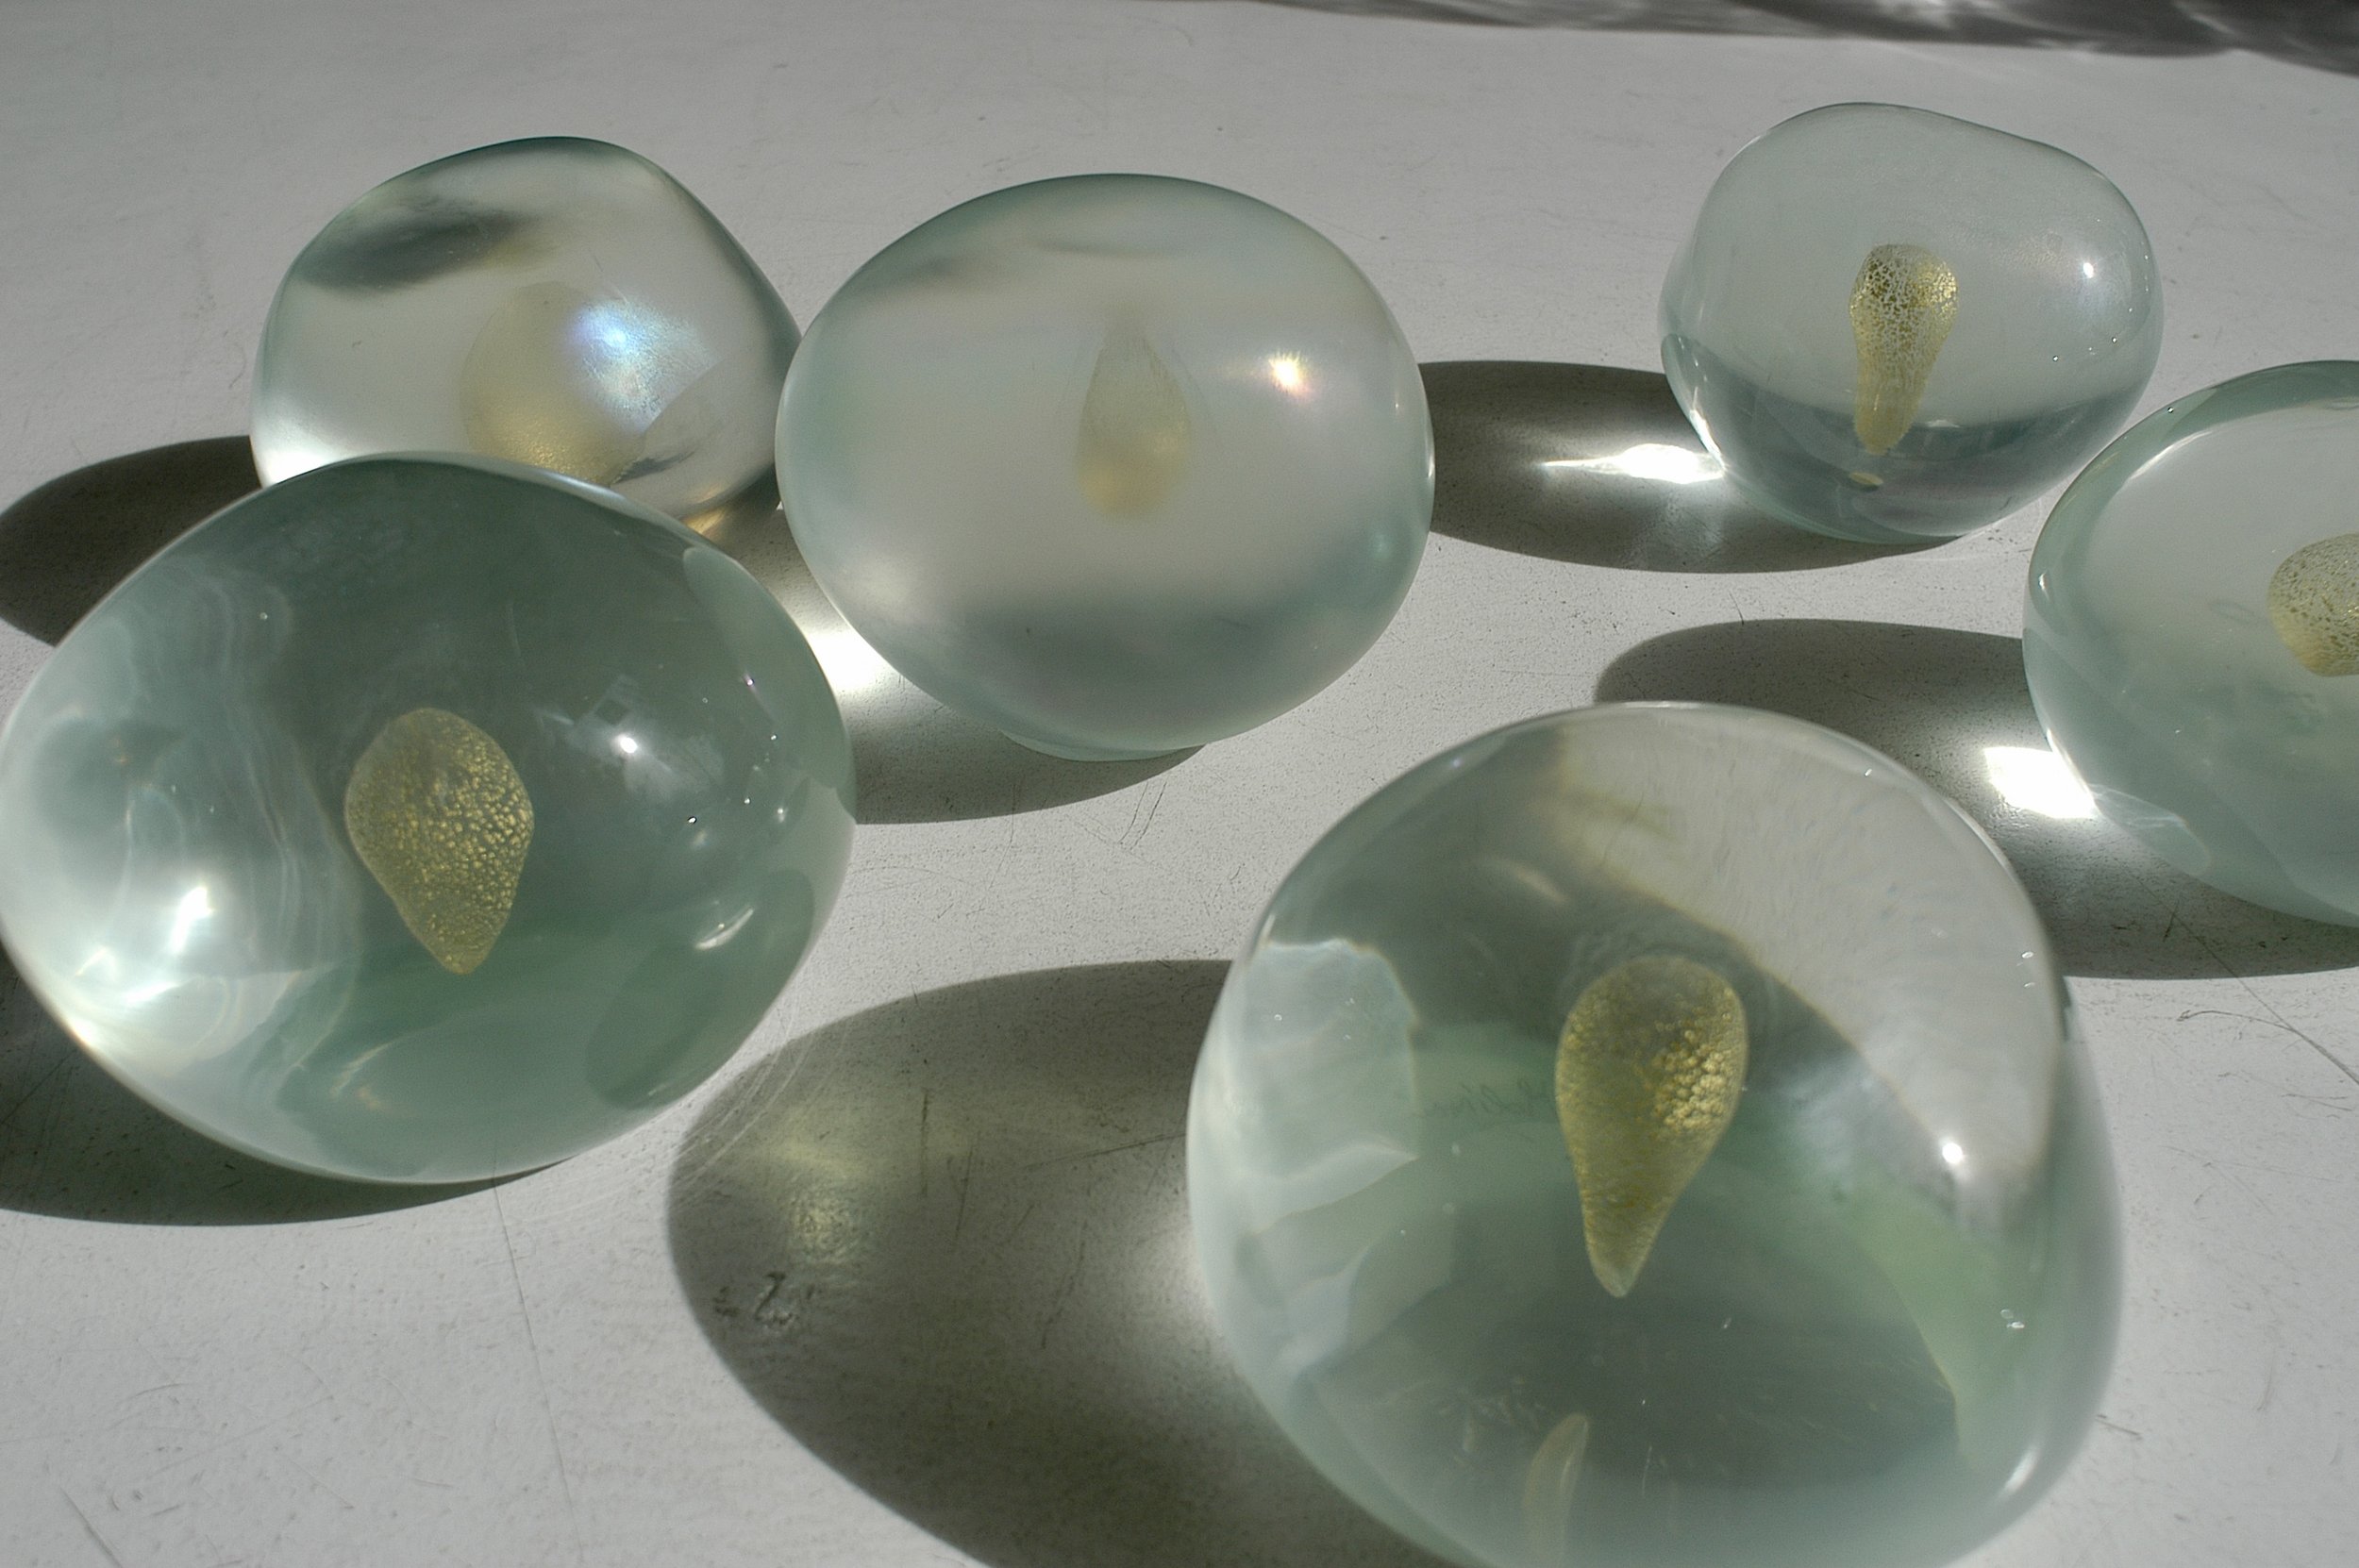 Patrizia Molinari, "Secret stones", 2007